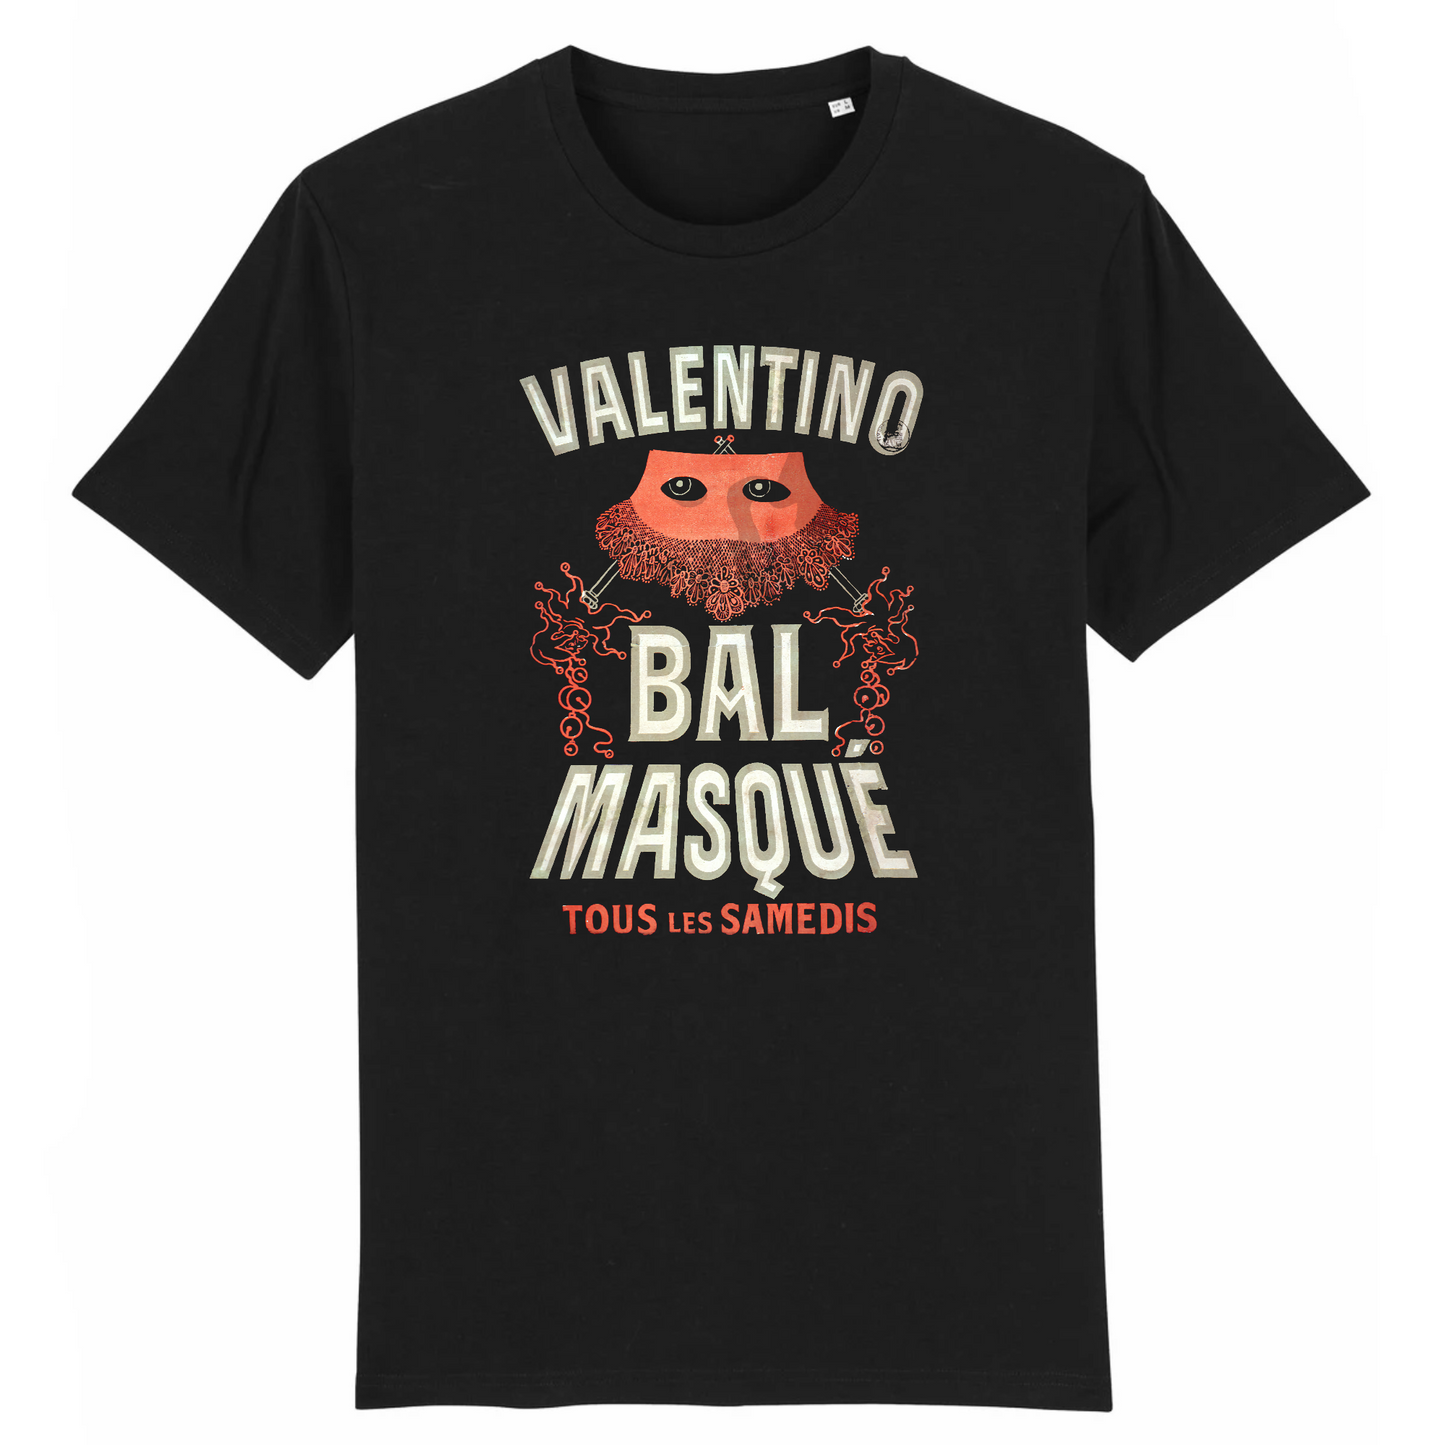 Valentino Bal Masqué by Jules Cheret 1875 - Organic Cotton T-Shirt